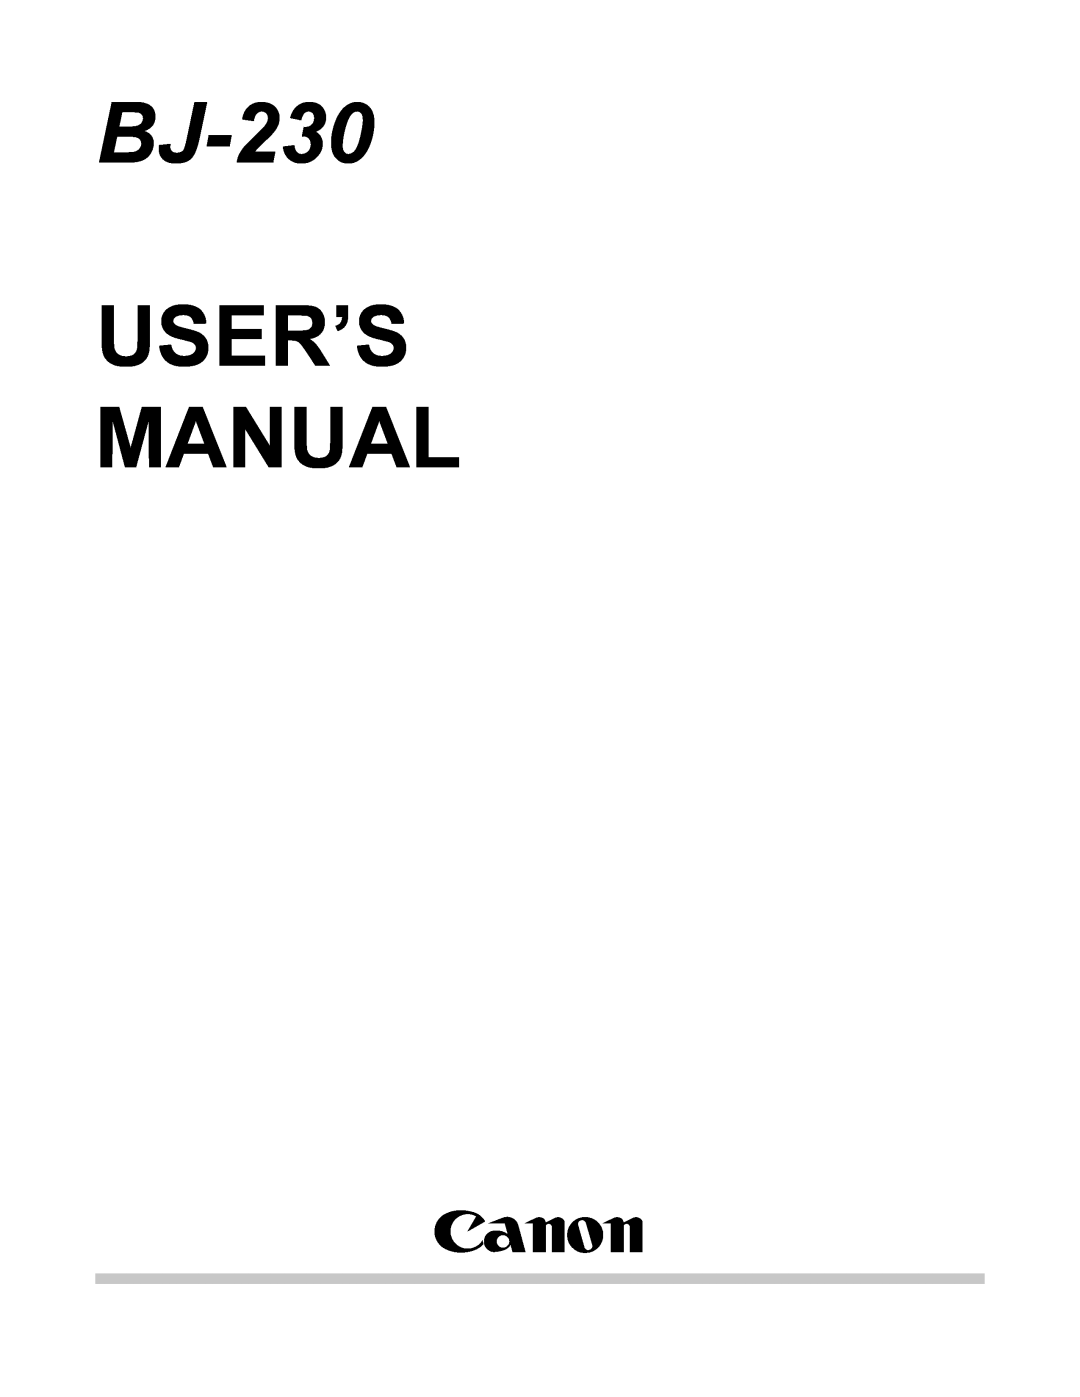 Canon BJ-230 user manual User’S Manual, Canon 